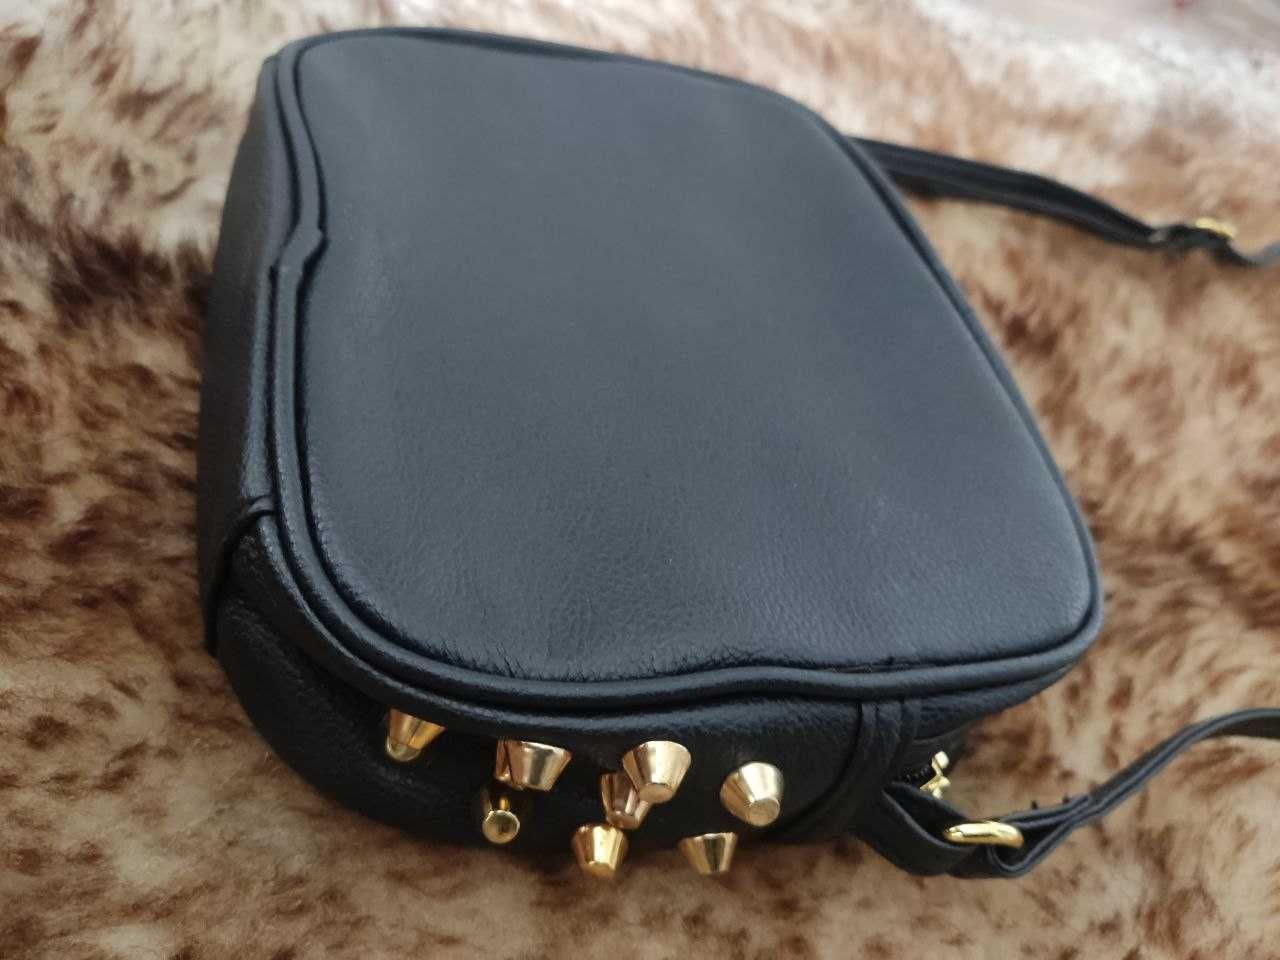 Mała, czarna torebka ze złotymi elementami marki Sinsay.